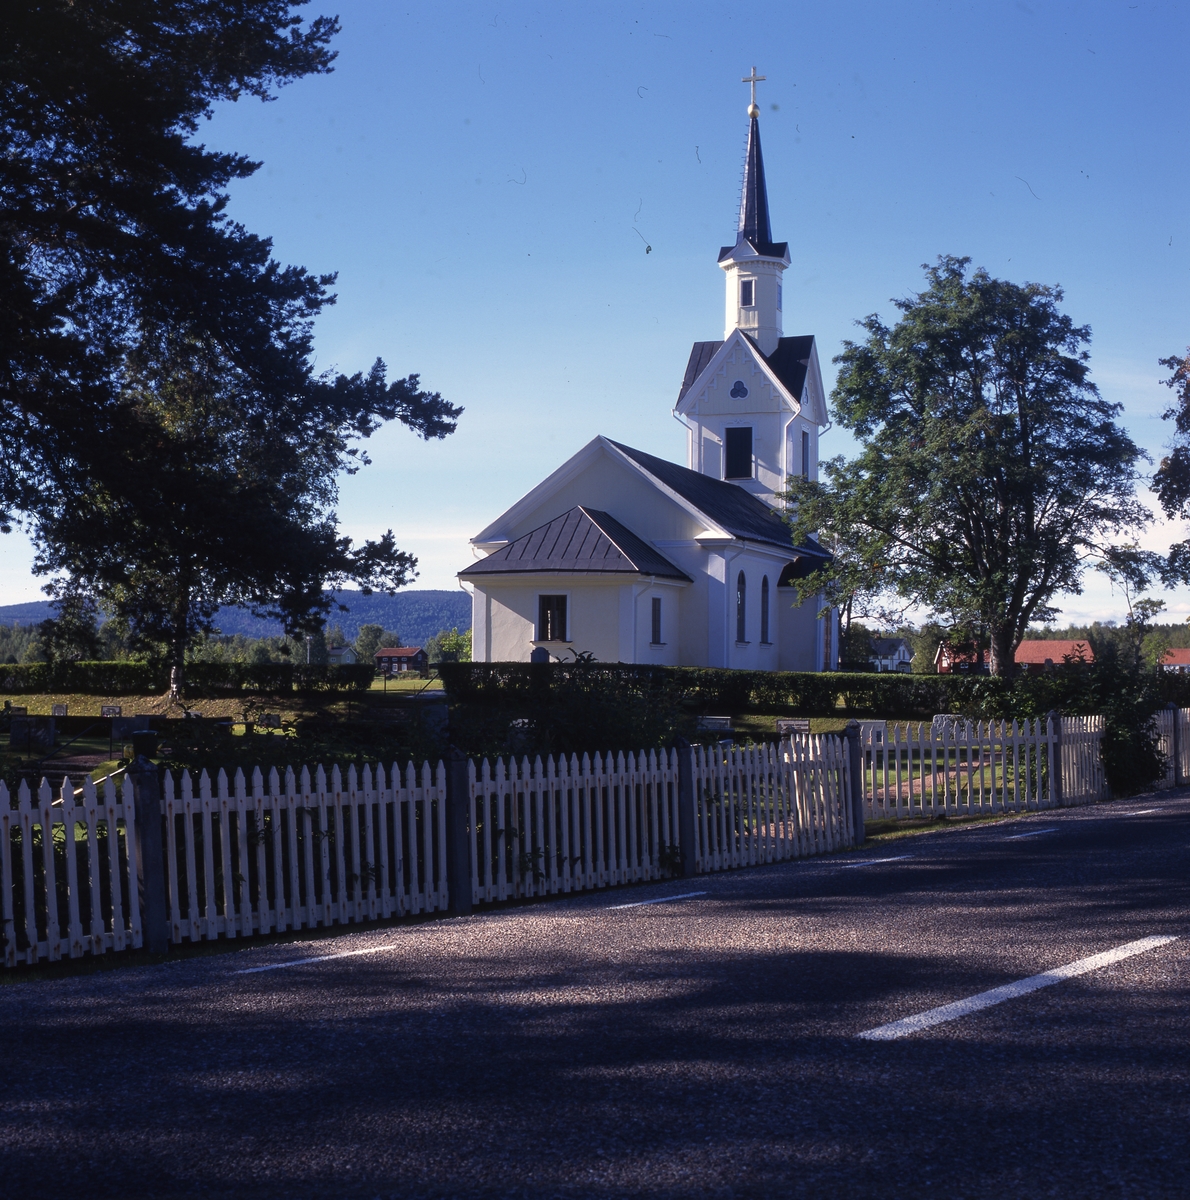 Kårböle kyrka byggd i nyklassicistisk stil i revetarat trä och invigdes 1870, 1996. Den ligger utmed den gamla pilgrimsvägen till Nidaros.